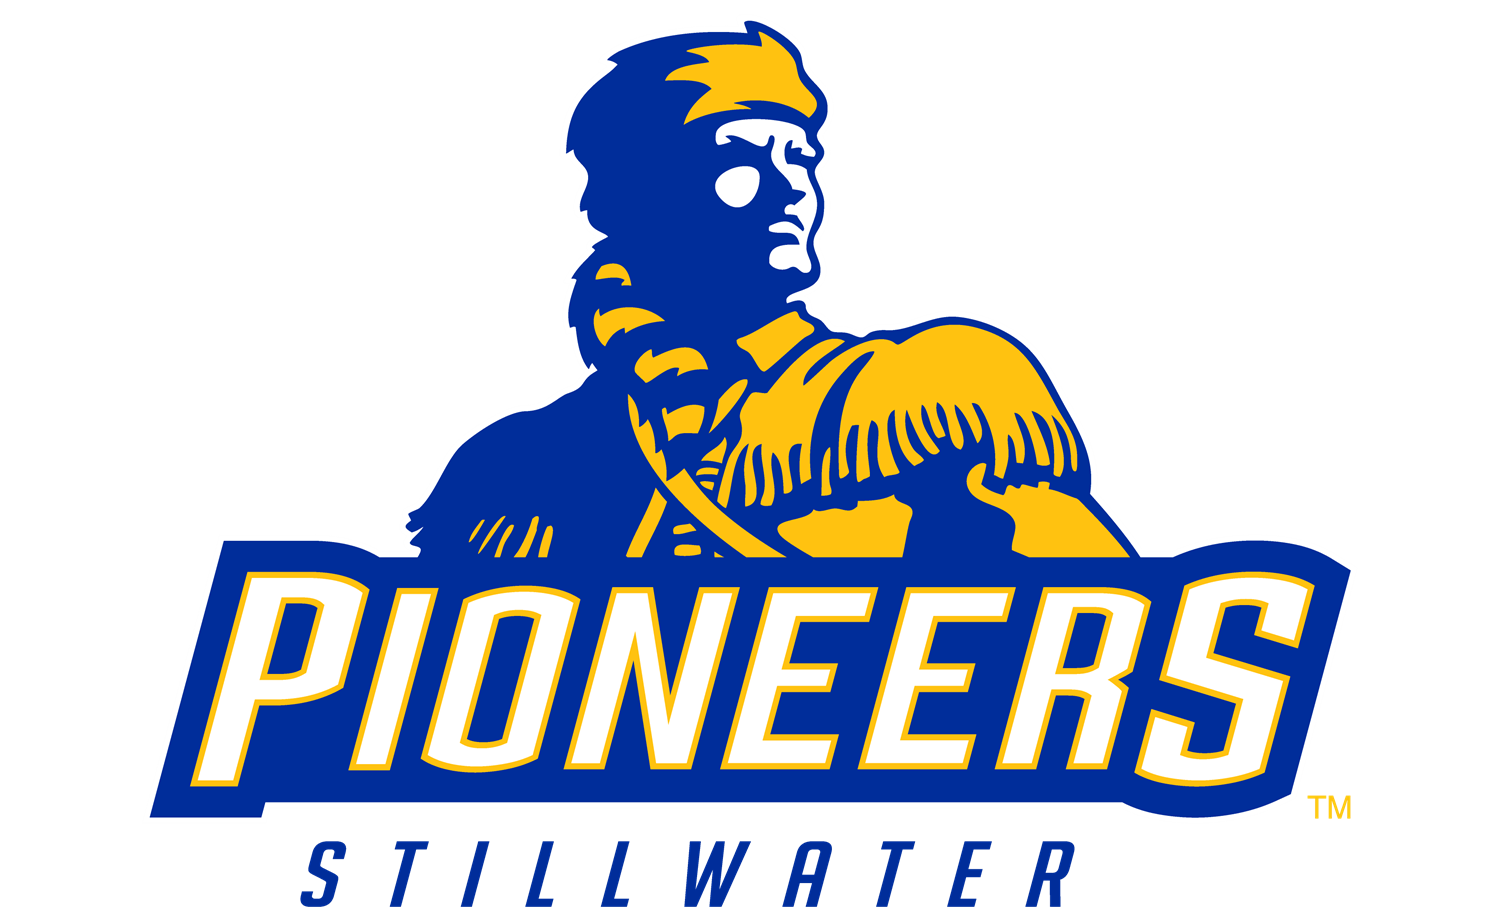 Stillwater Pioneers Logo